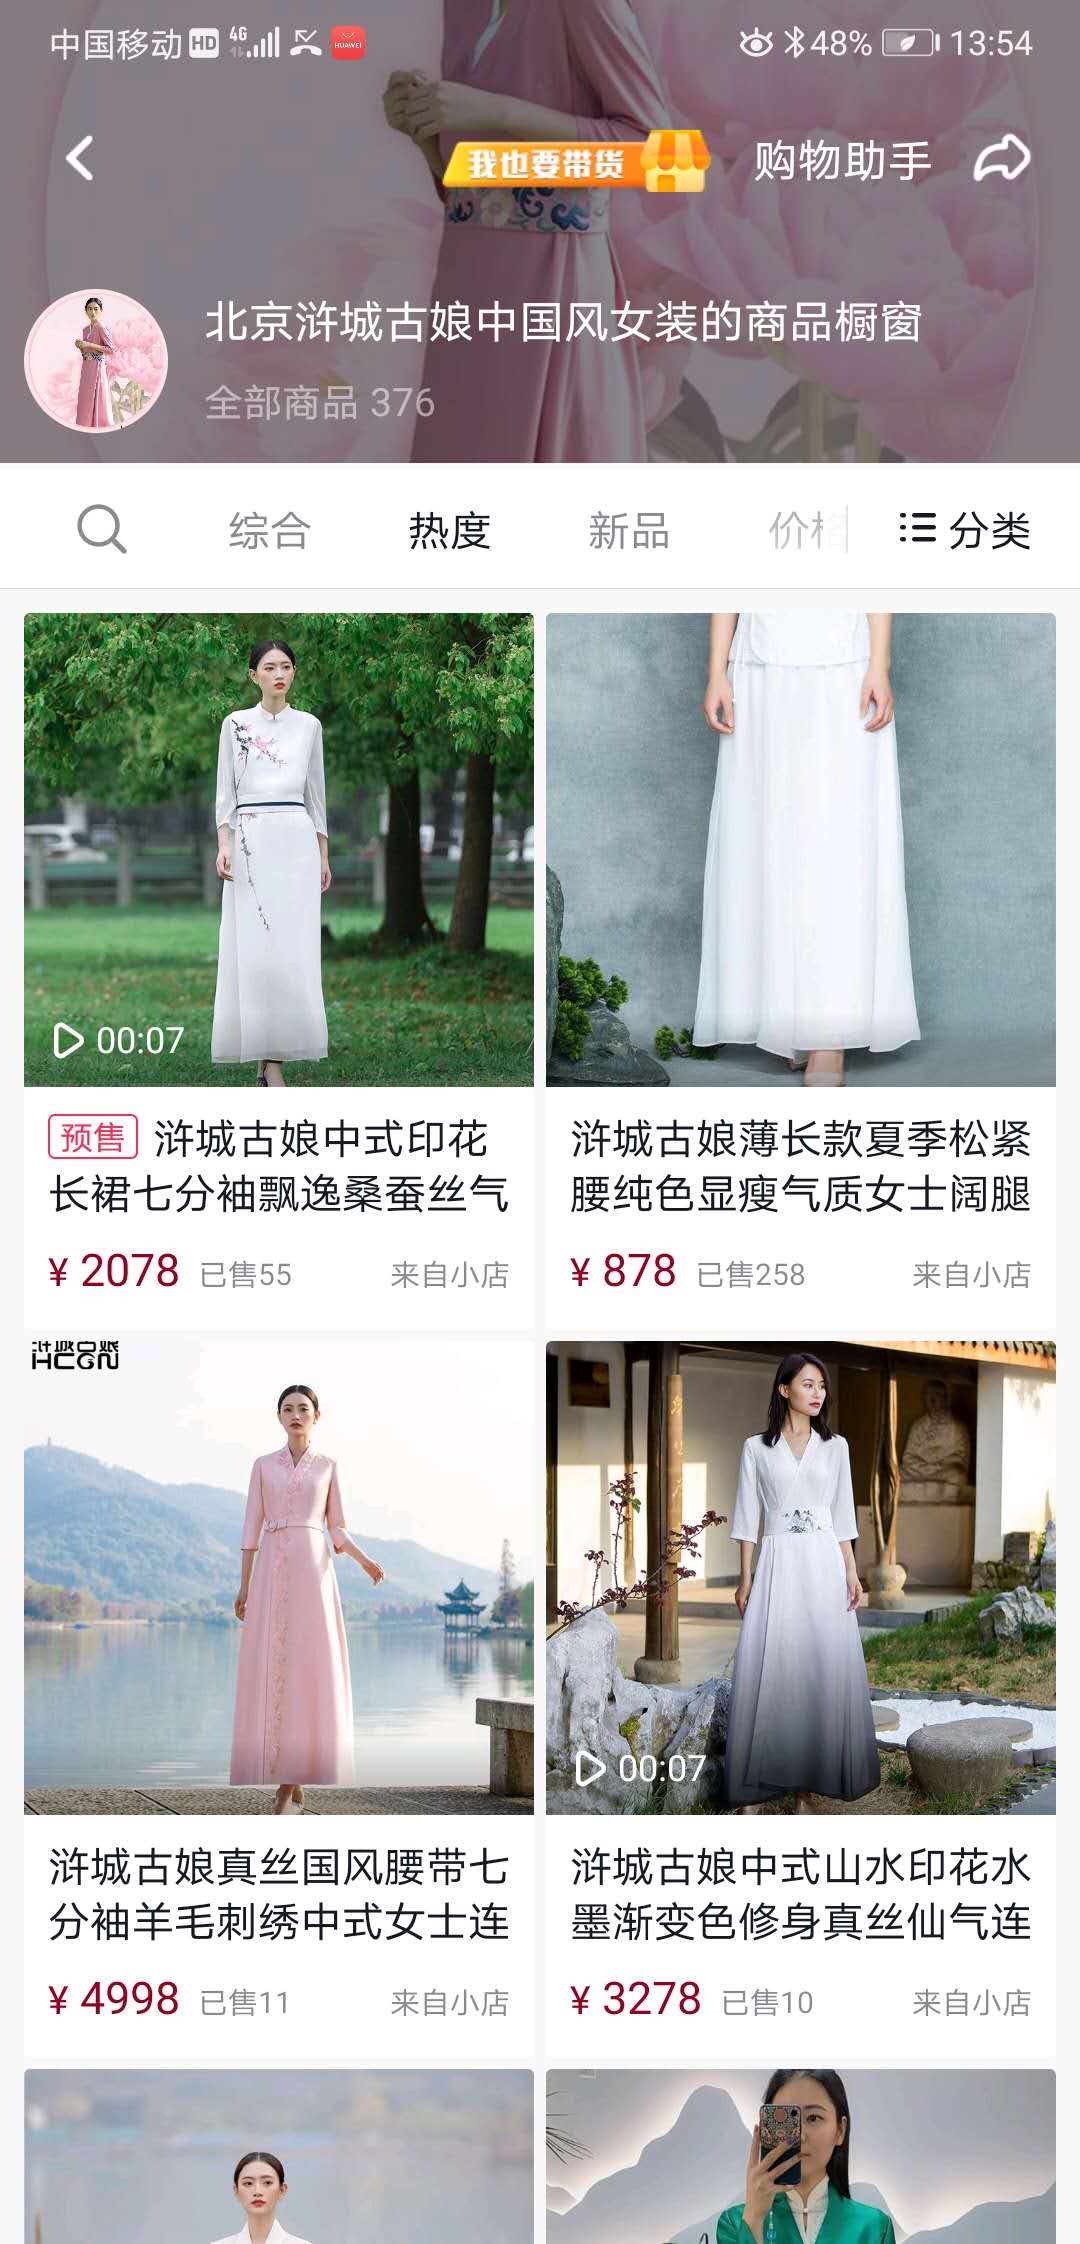 中国风女装抖音号全网整合营销运营案例